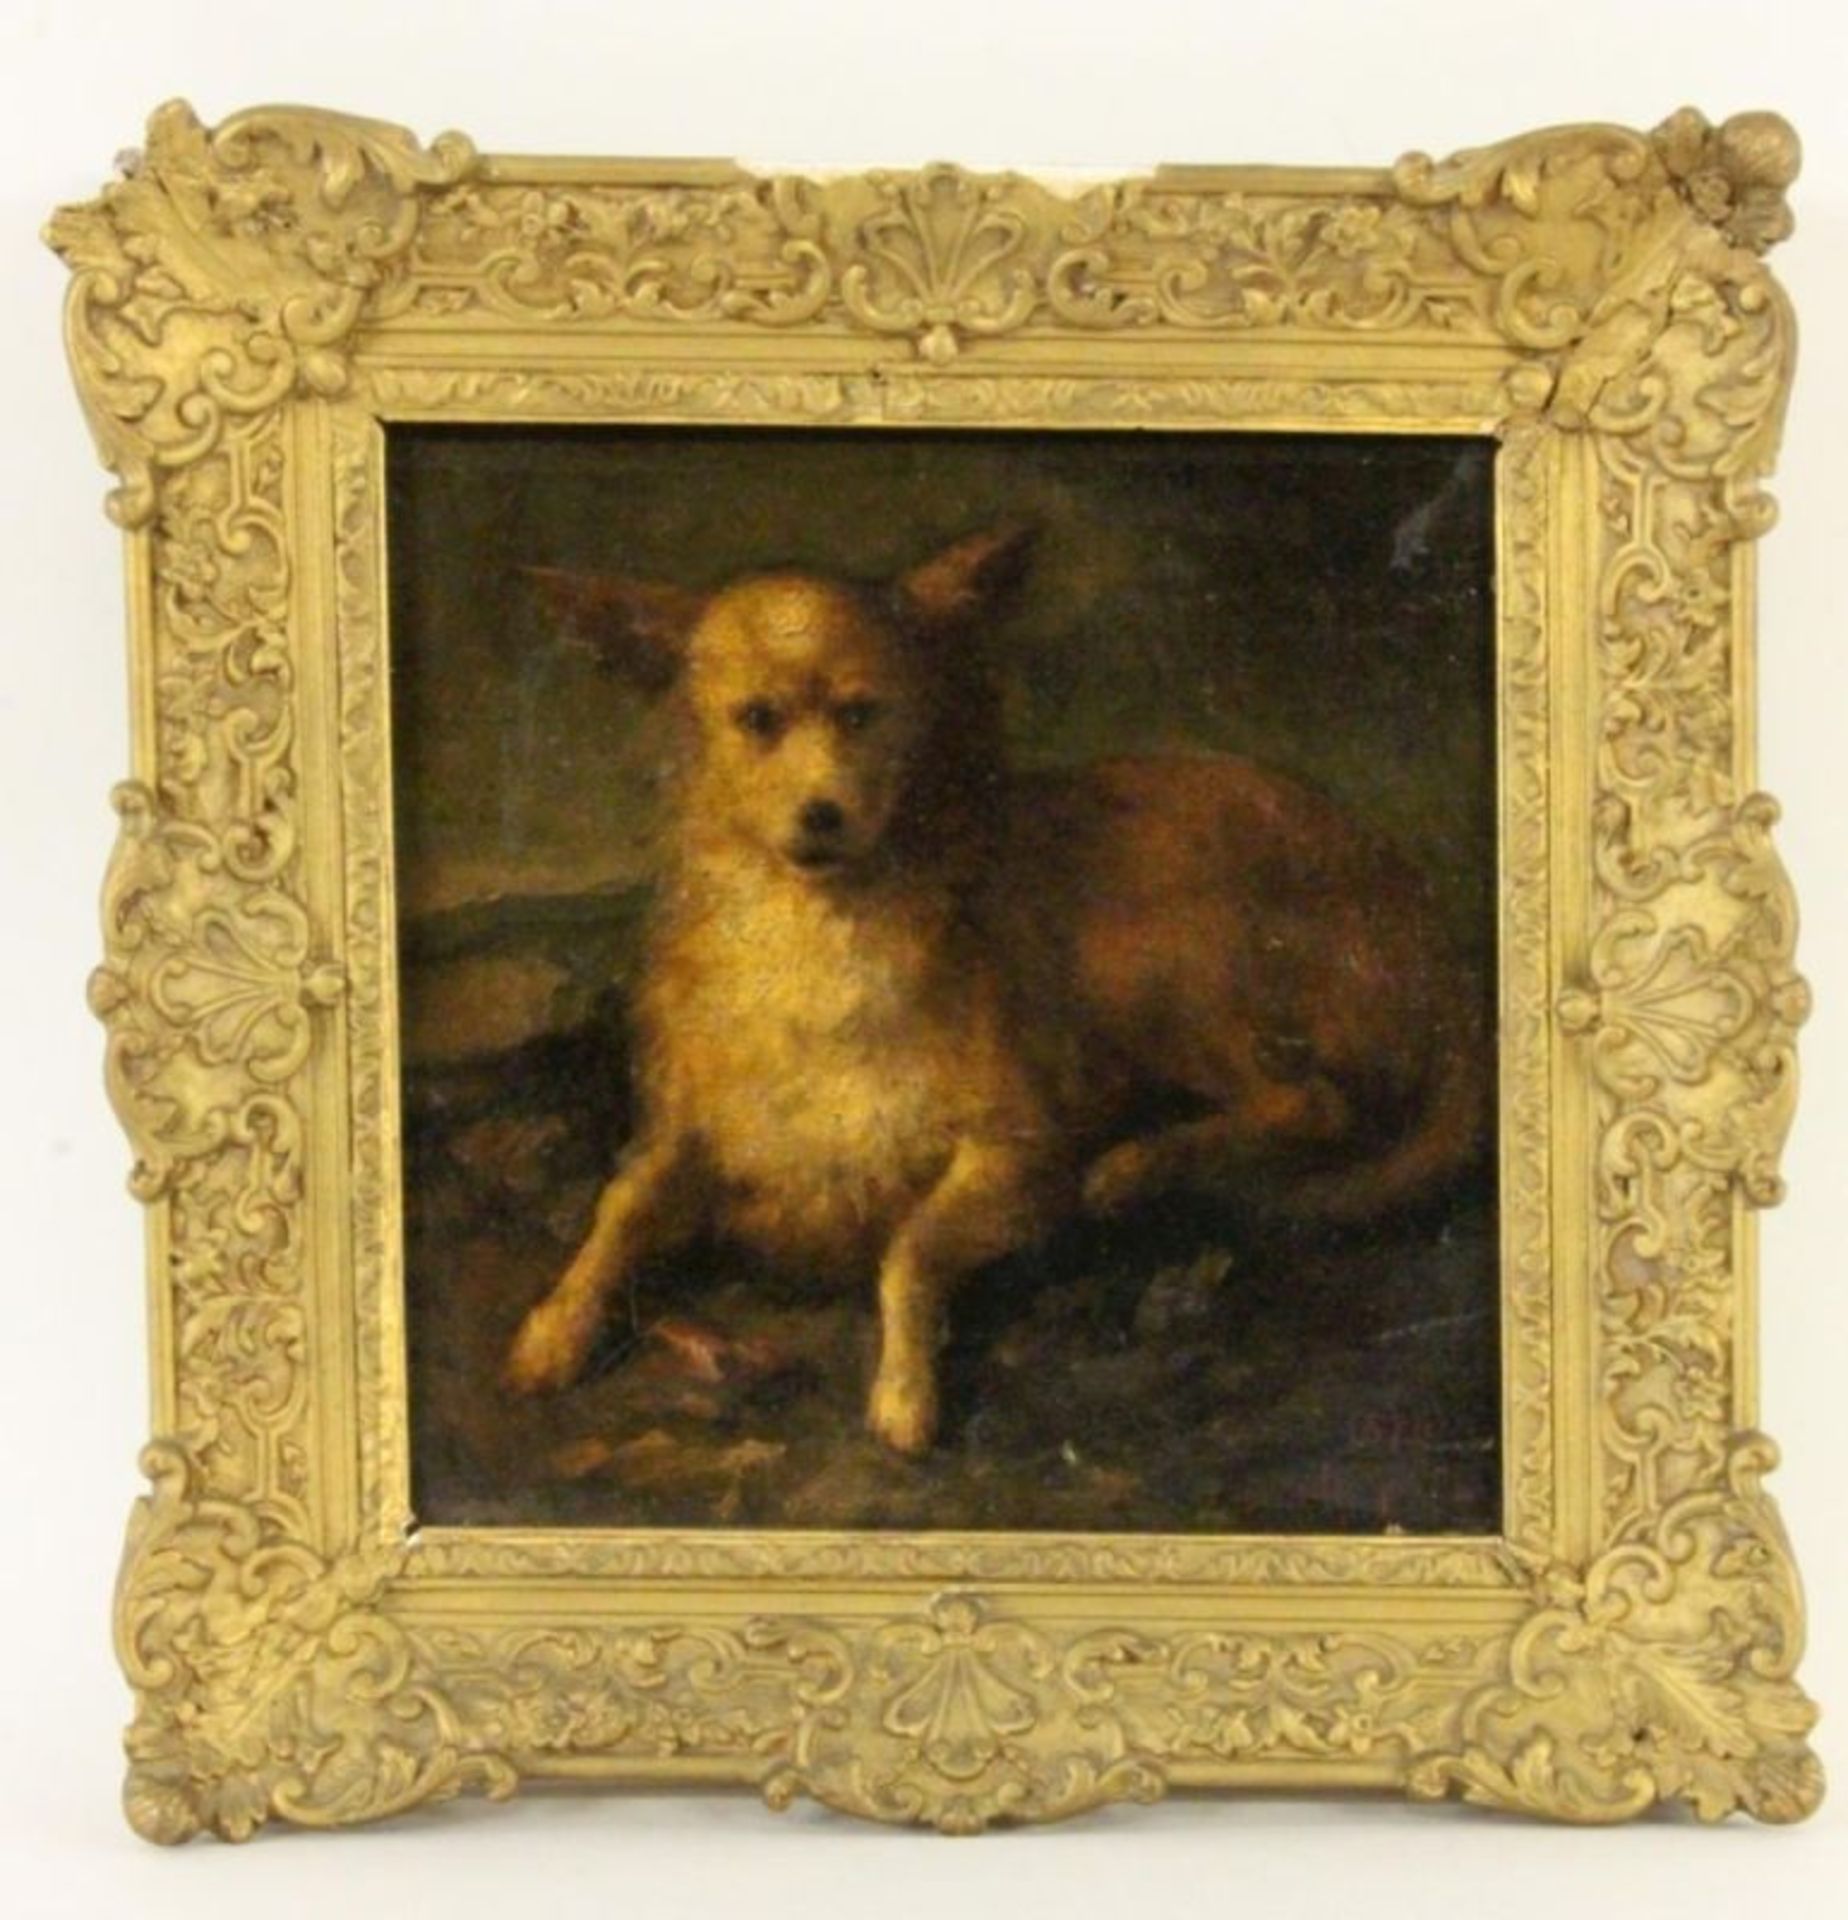 GUÉDY, LOUISGrenoble 1847 - 1926 Liegender Hund. Öl/Lwd., signiert, dat. und bez.: Guédy, Grenoble